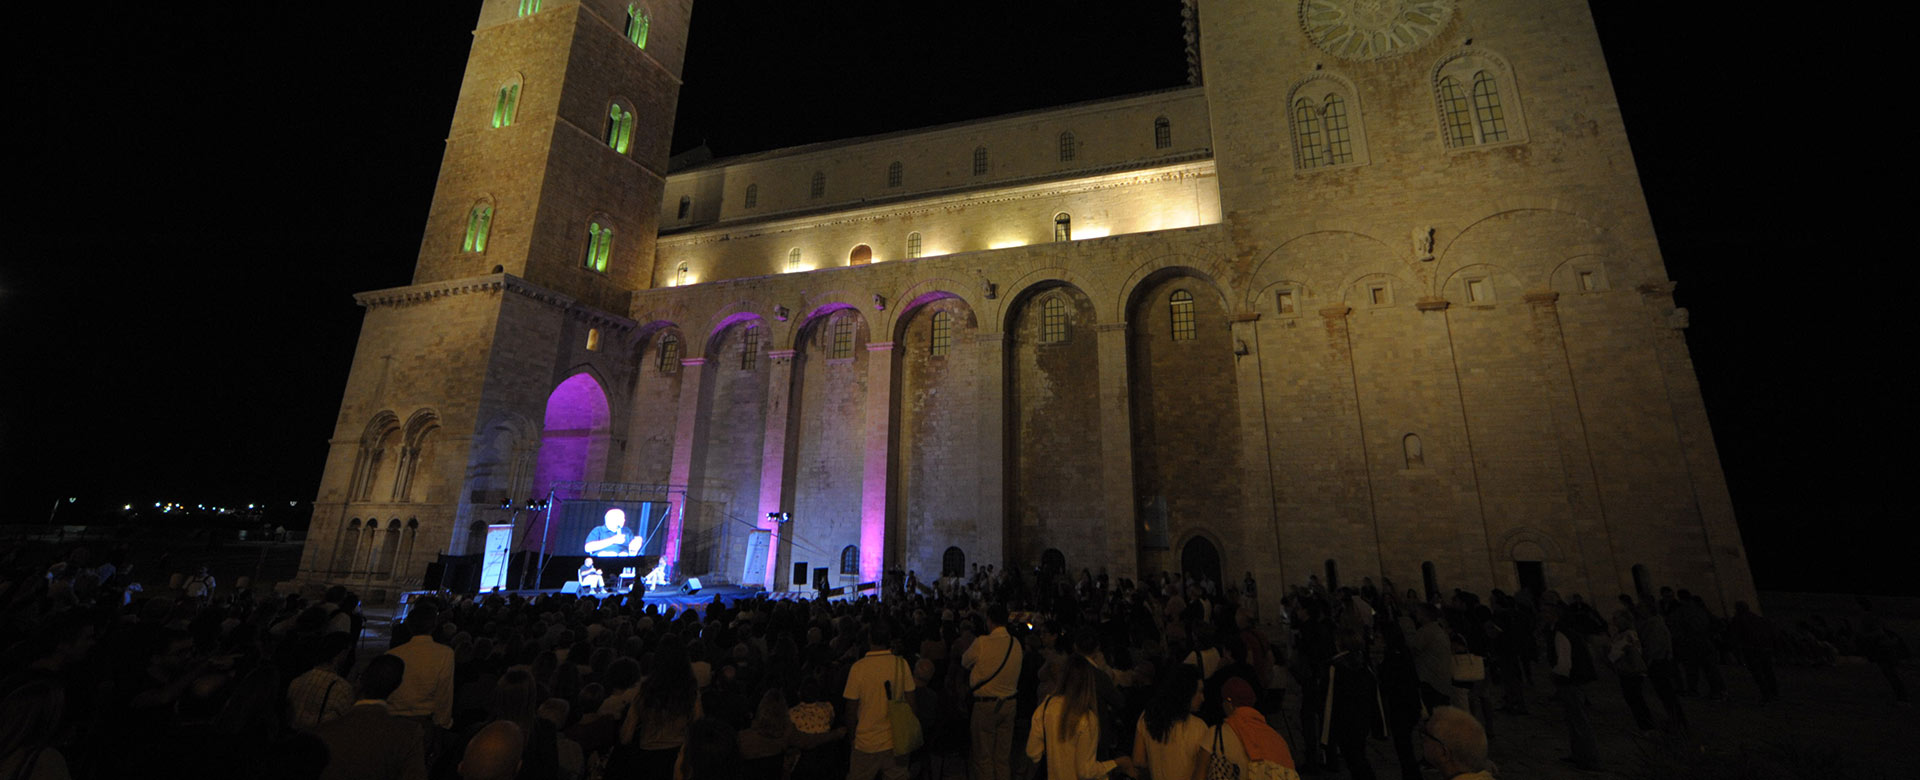 La cattedrale di Trani in occasione del festival Dialoghi di Trani